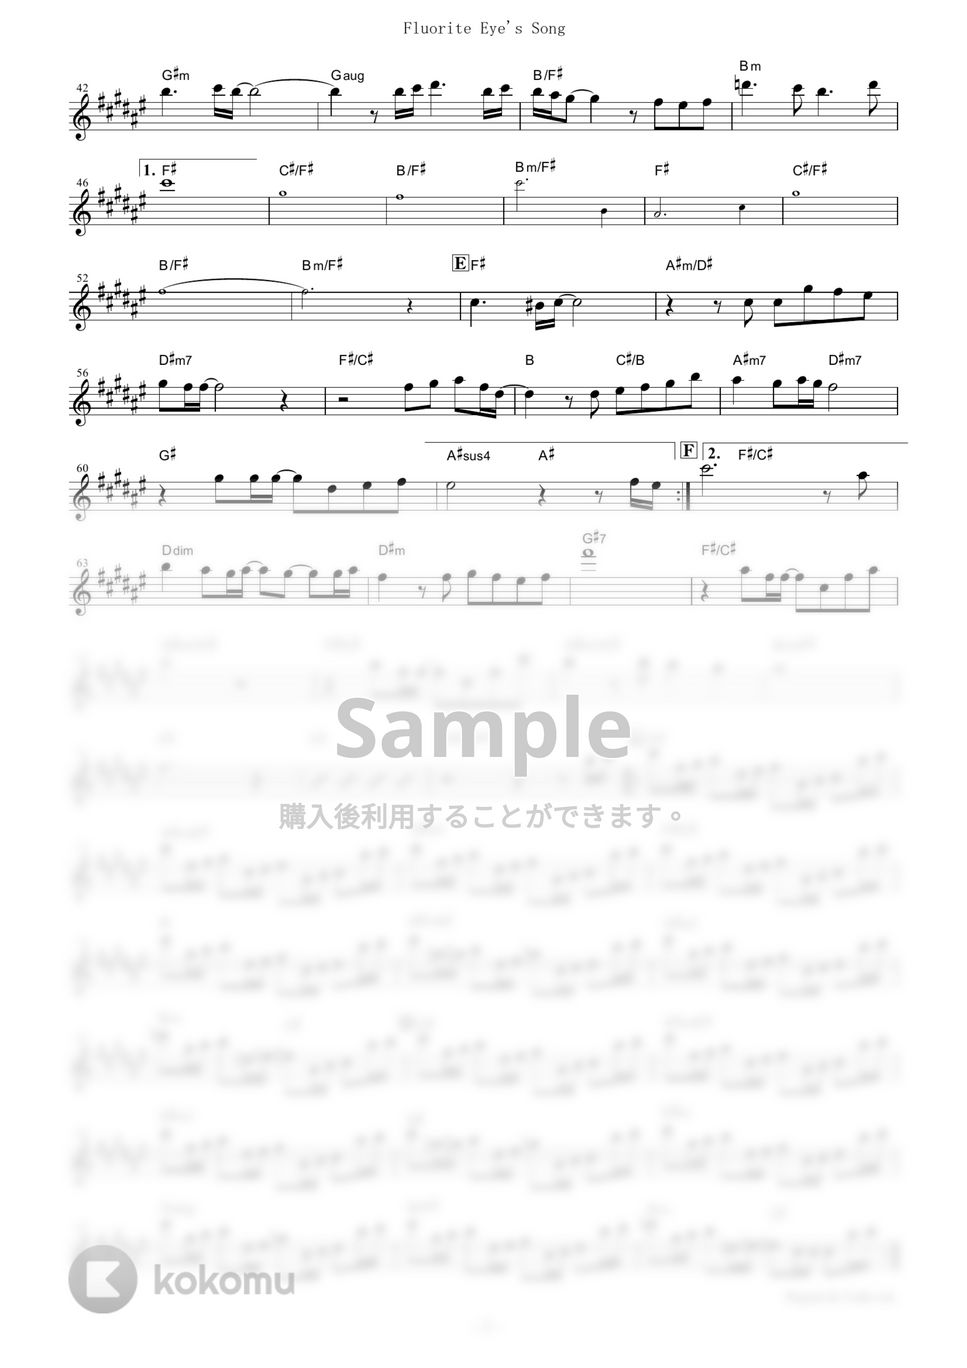 ヴィヴィ（Vo.八木海莉） - Fluorite Eye's Song (『Vivy -Fluorite Eye’s Song-』 / in Bb) by muta-sax